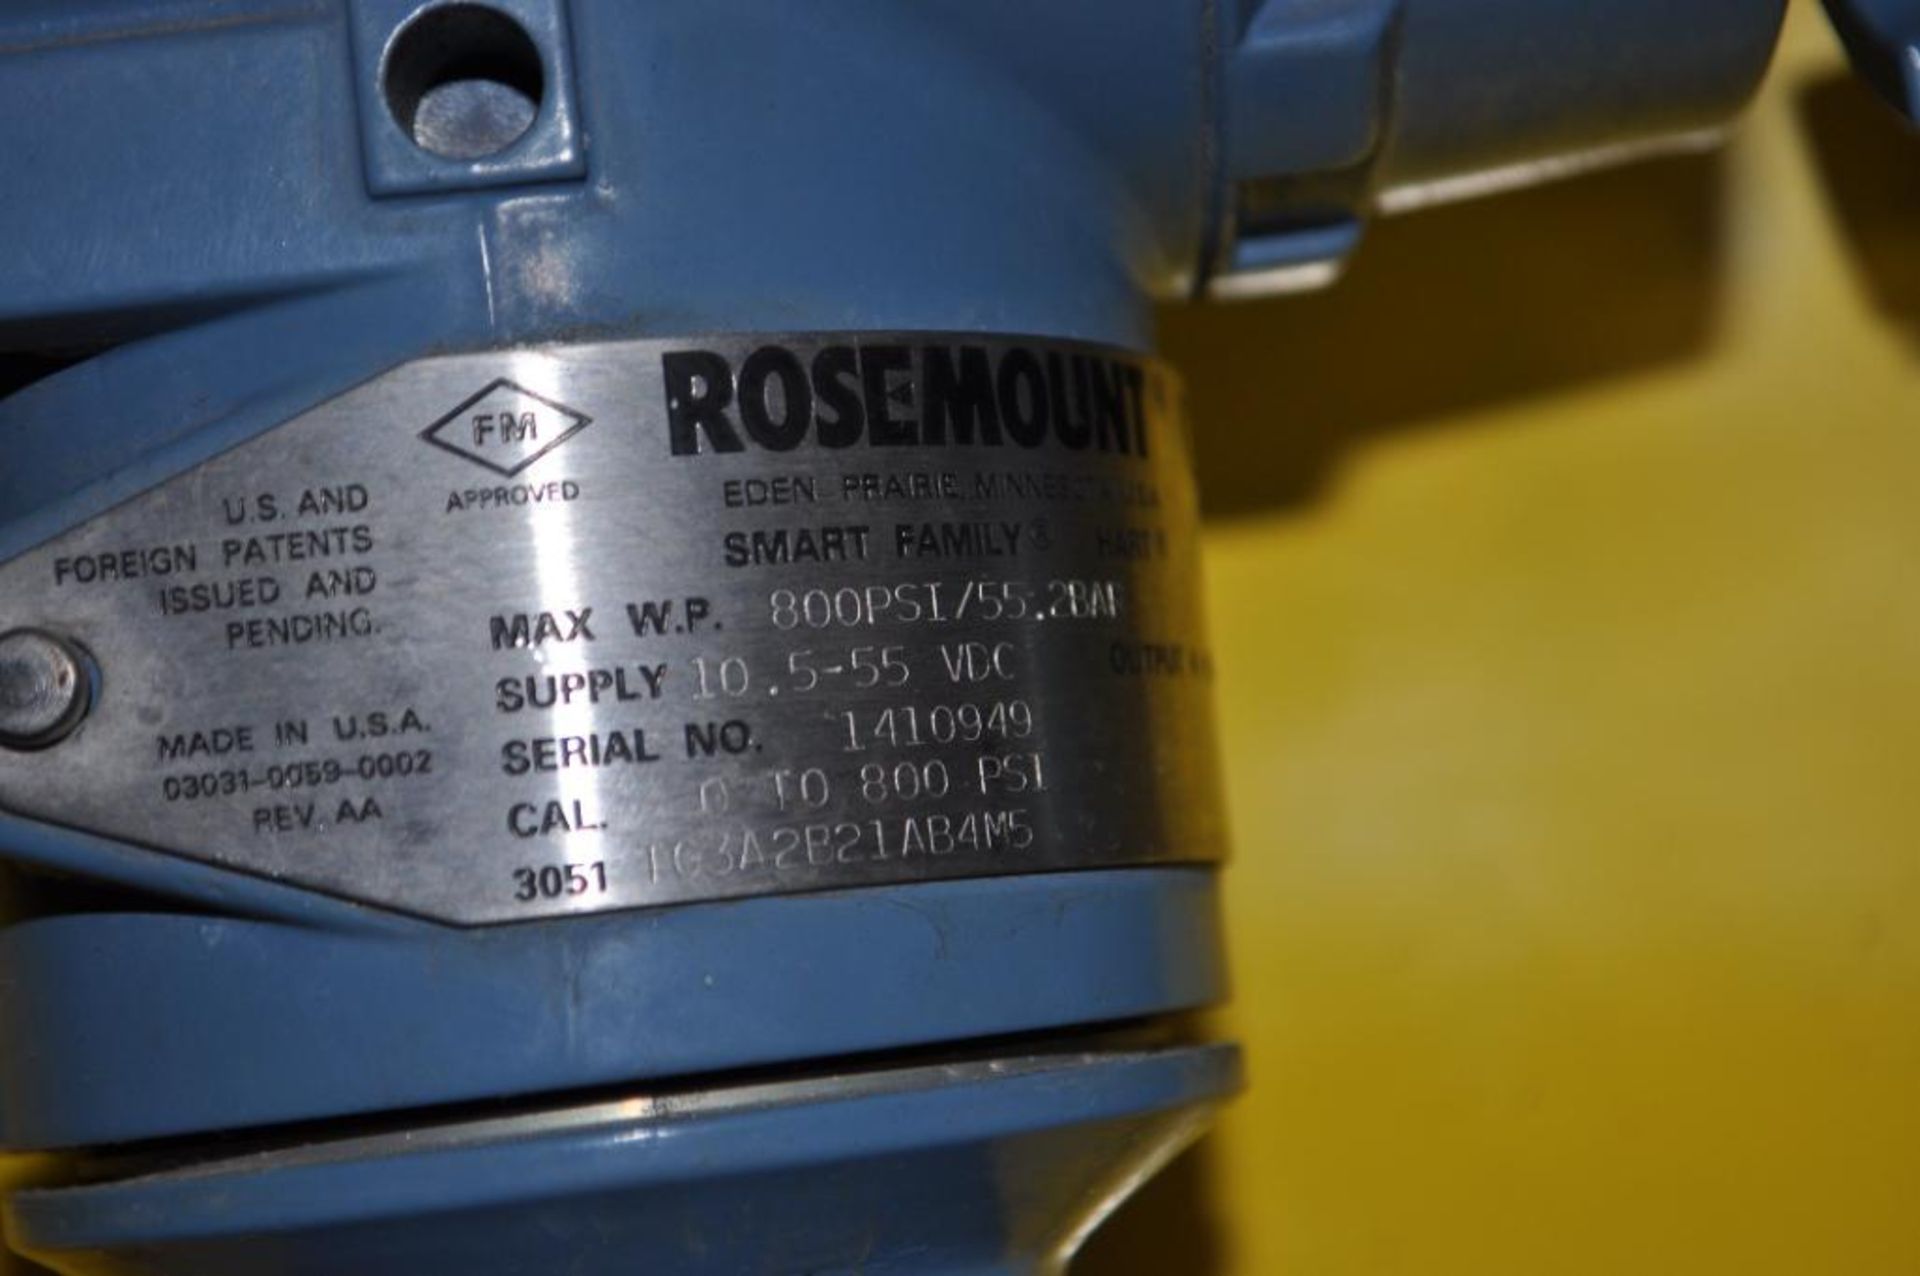 LOT OF ROSEMOUNT 3051 PRESSURE TRANSMITTERS, PRESSURE WORKING PRESSURE: 30-800 PSI - Image 2 of 4